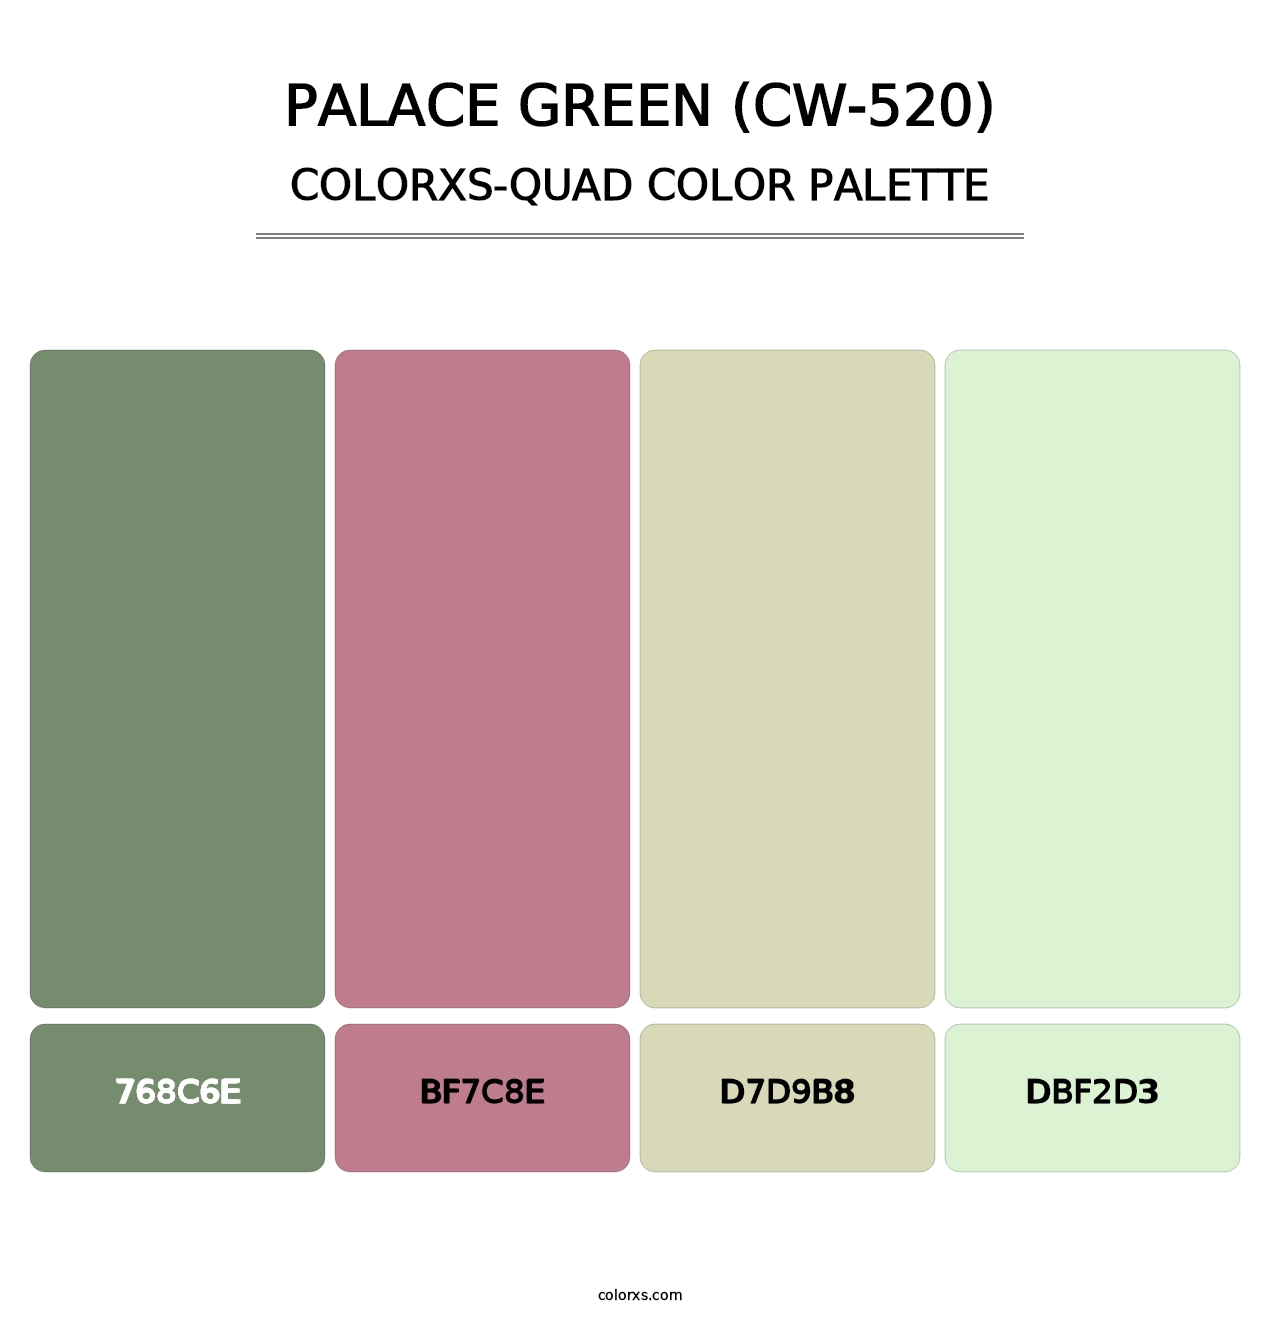 Palace Green (CW-520) - Colorxs Quad Palette